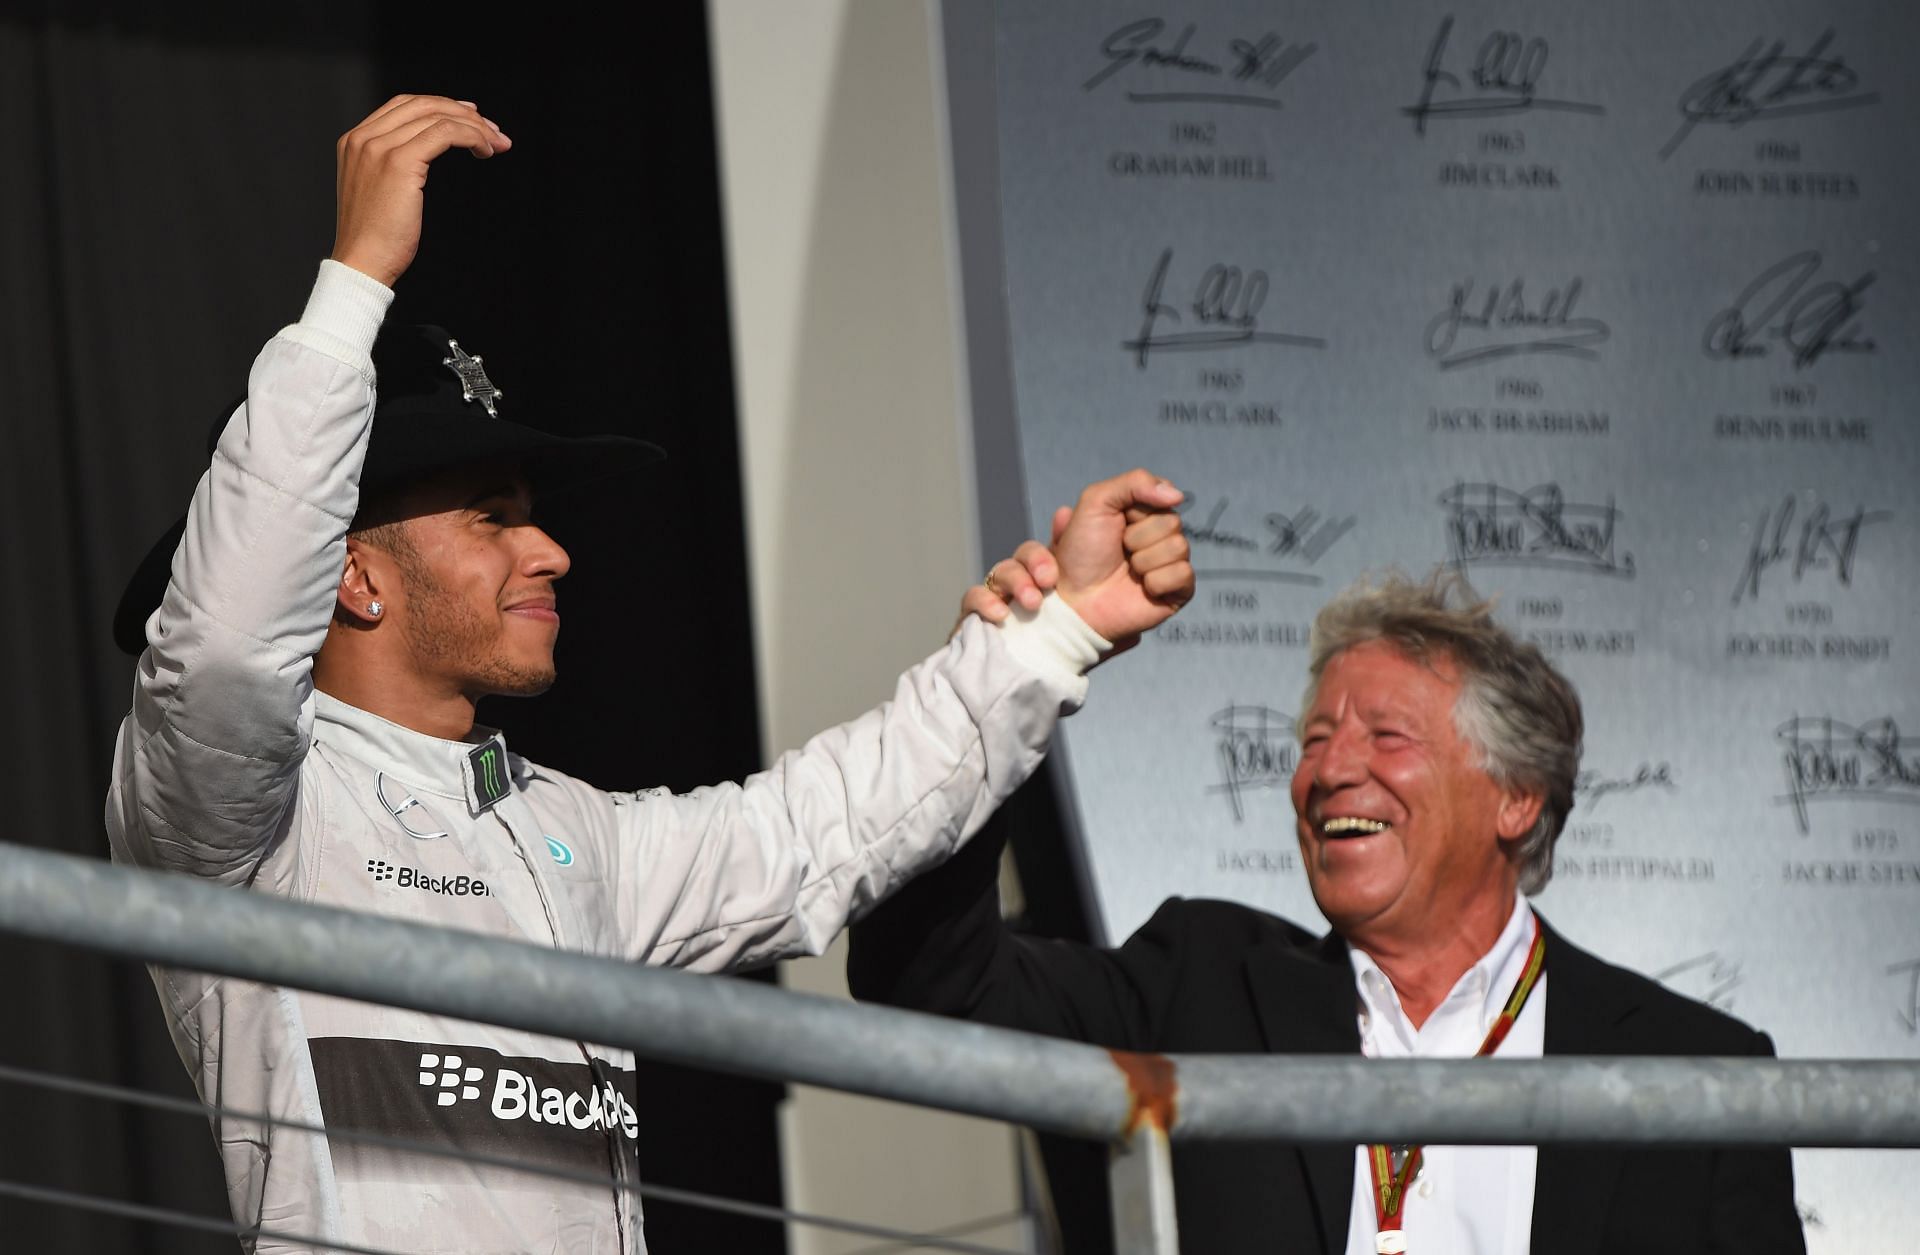 F1 Grand Prix of USA - Hamilton celebrates with Andretti